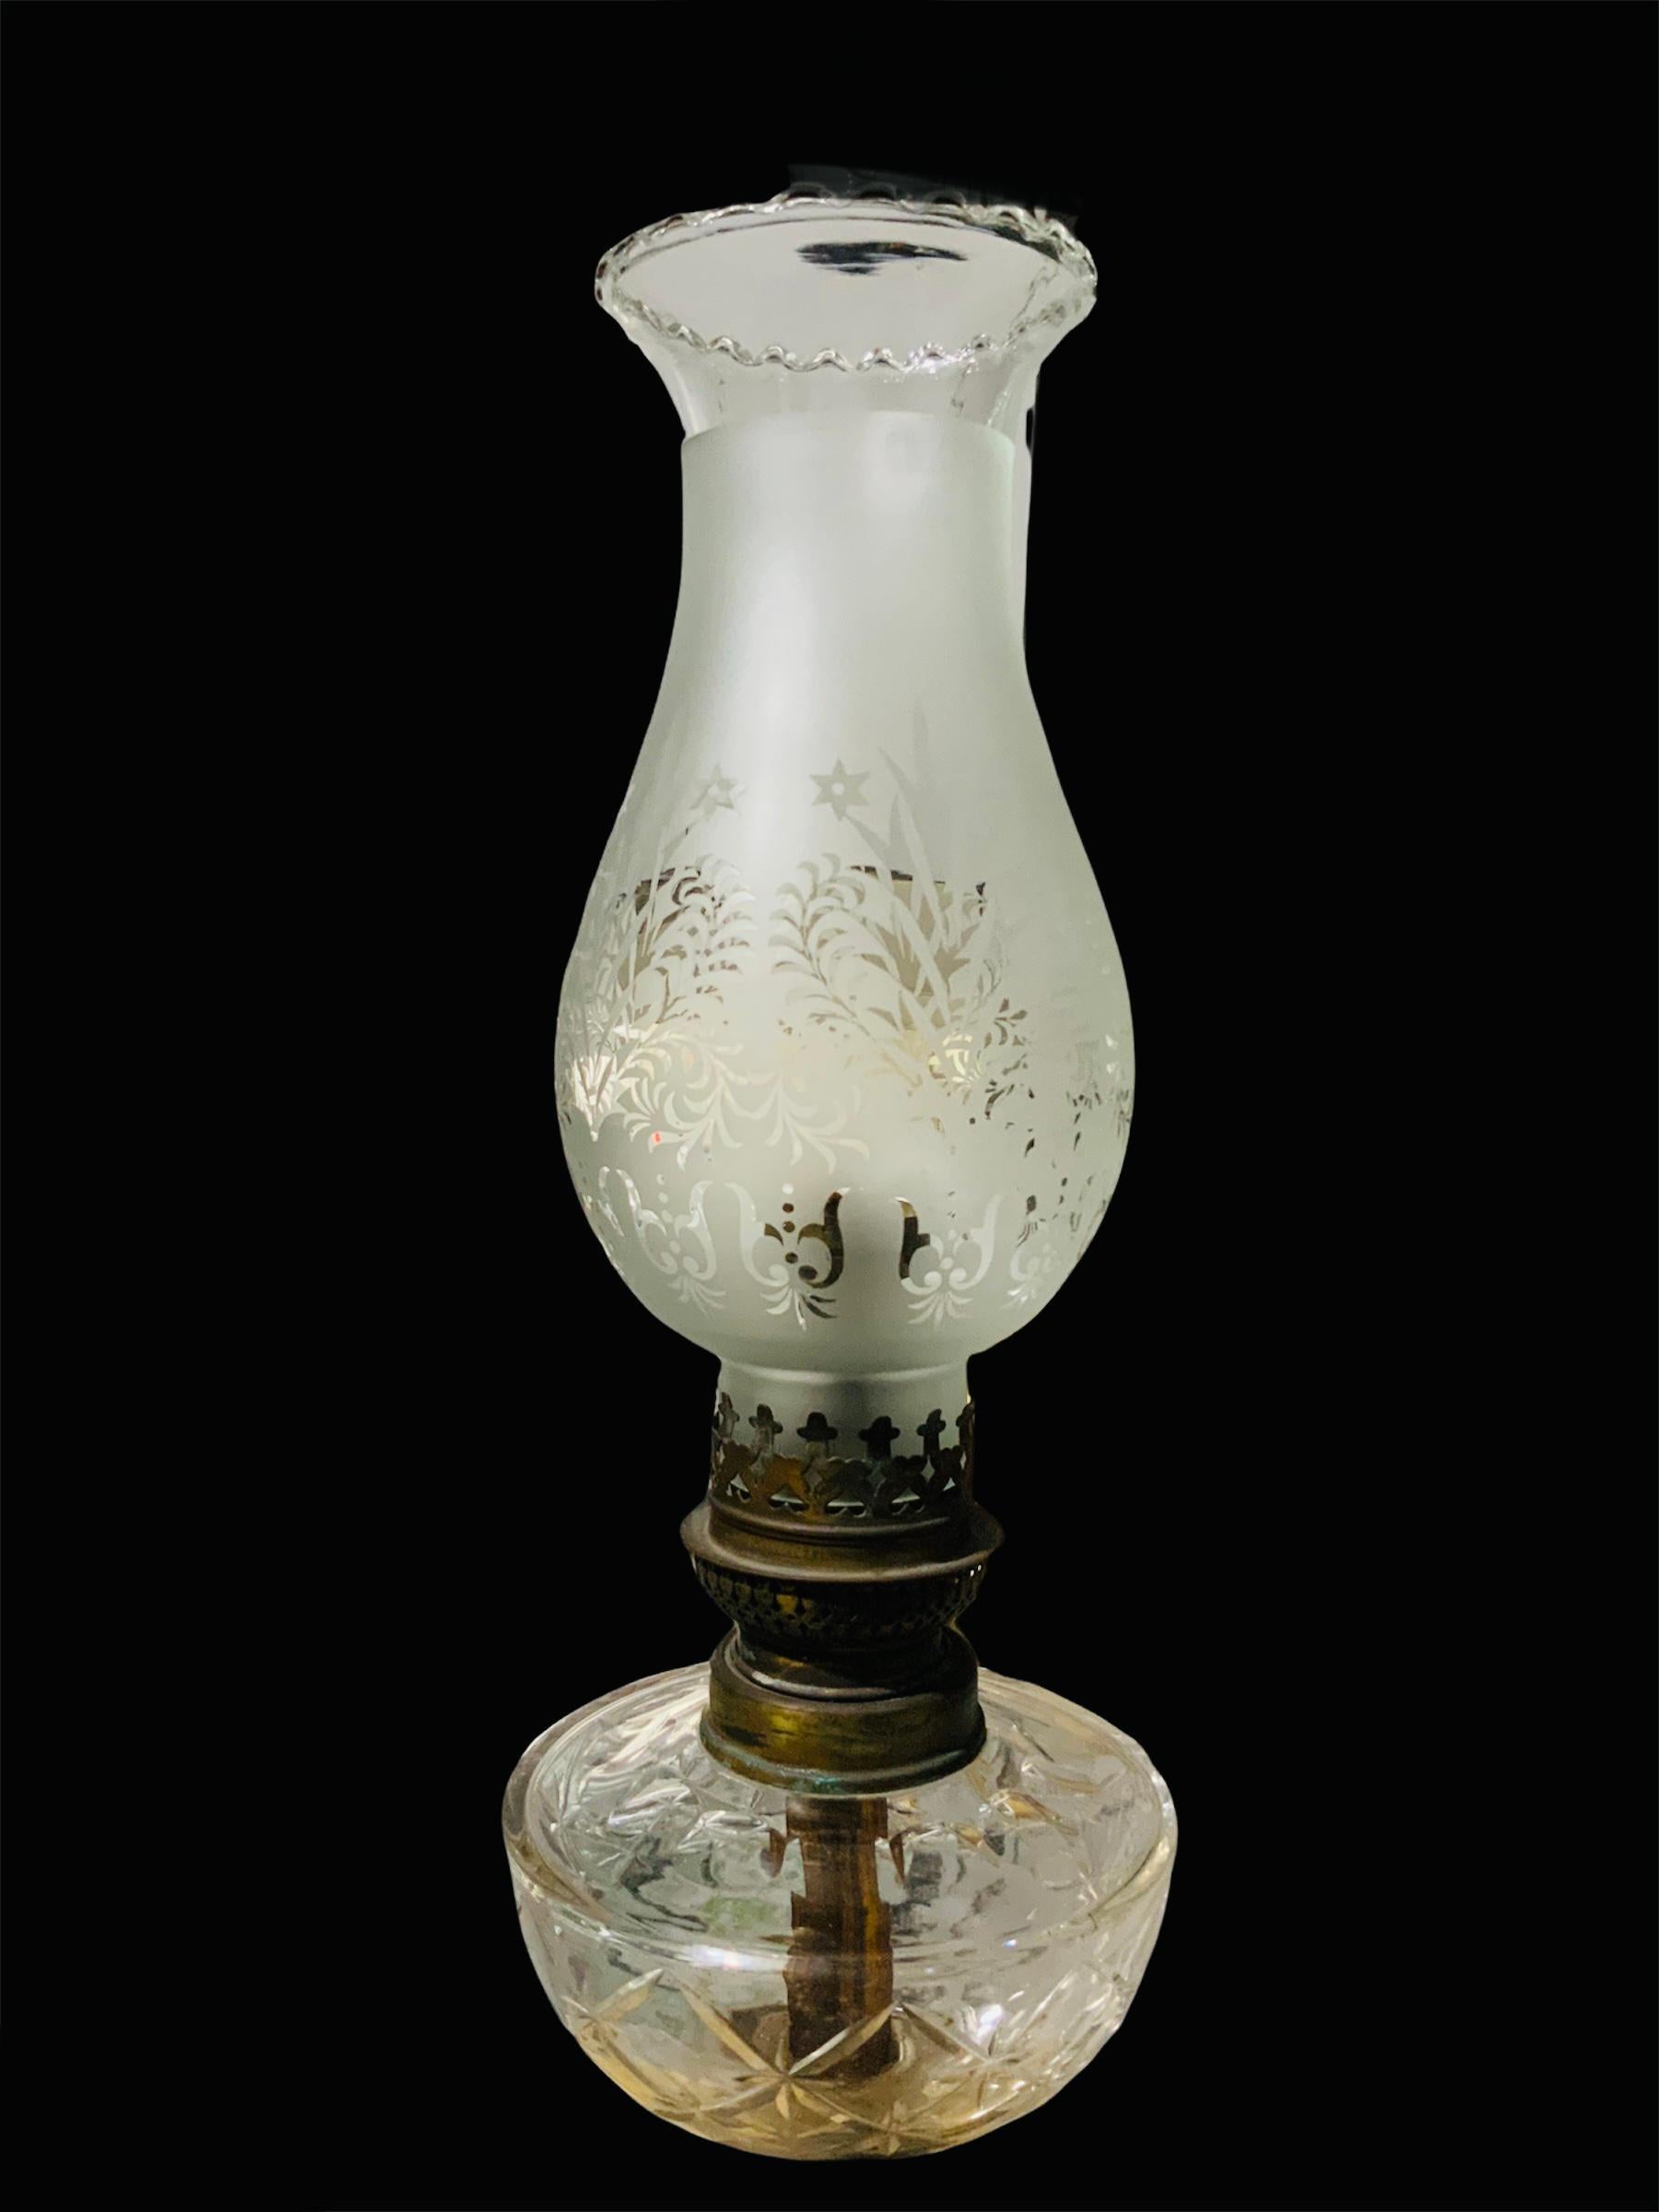 Il s'agit d'une élégante lampe à huile à colonne néoclassique qui a été électrifiée. La lampe se compose d'un abat-jour transparent dépoli en forme de tulipe, orné de palmettes, de feuillages et d'étoiles. En dessous, c'est le brûleur en laiton